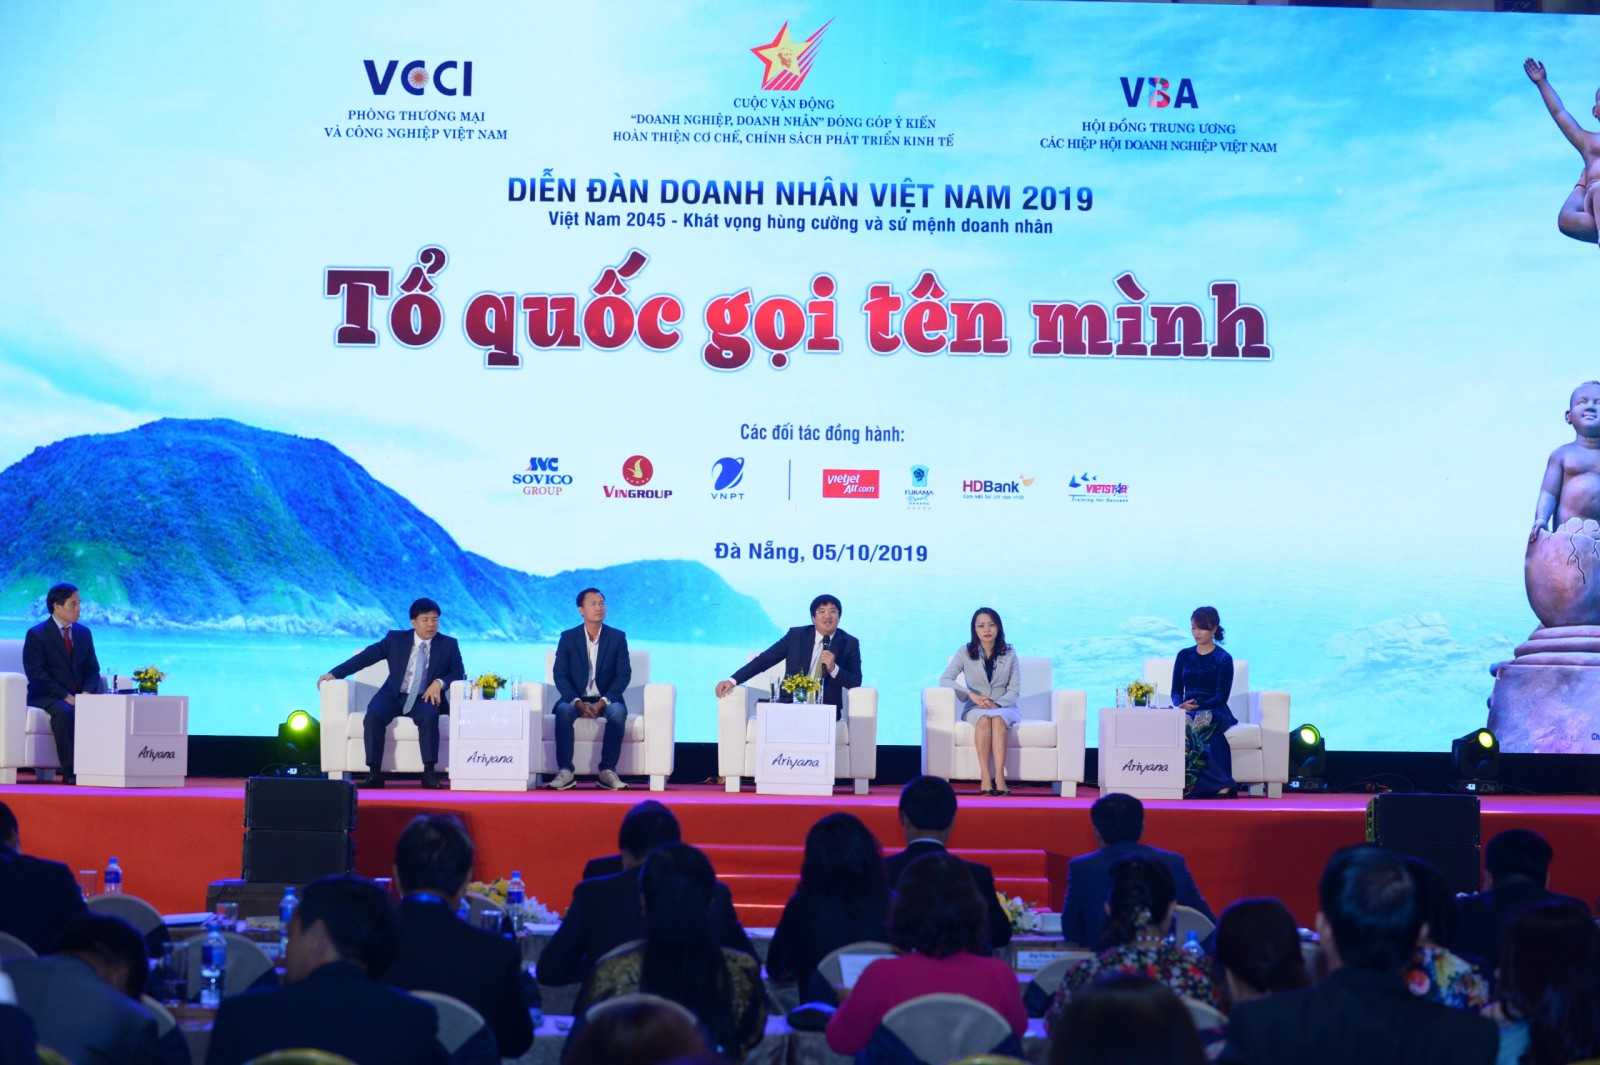 Phiên đối thoại với chủ đề: Làm gì để Tinh thần Việt Nam trở thành sức mạnh thần kỳ trong khởi nghiệp và phát triển bền vững? Hành động của doanh nghiệp và kiến nghiệ của doanh nghiệp, doanh nhân với Đảng và Nhà nước.